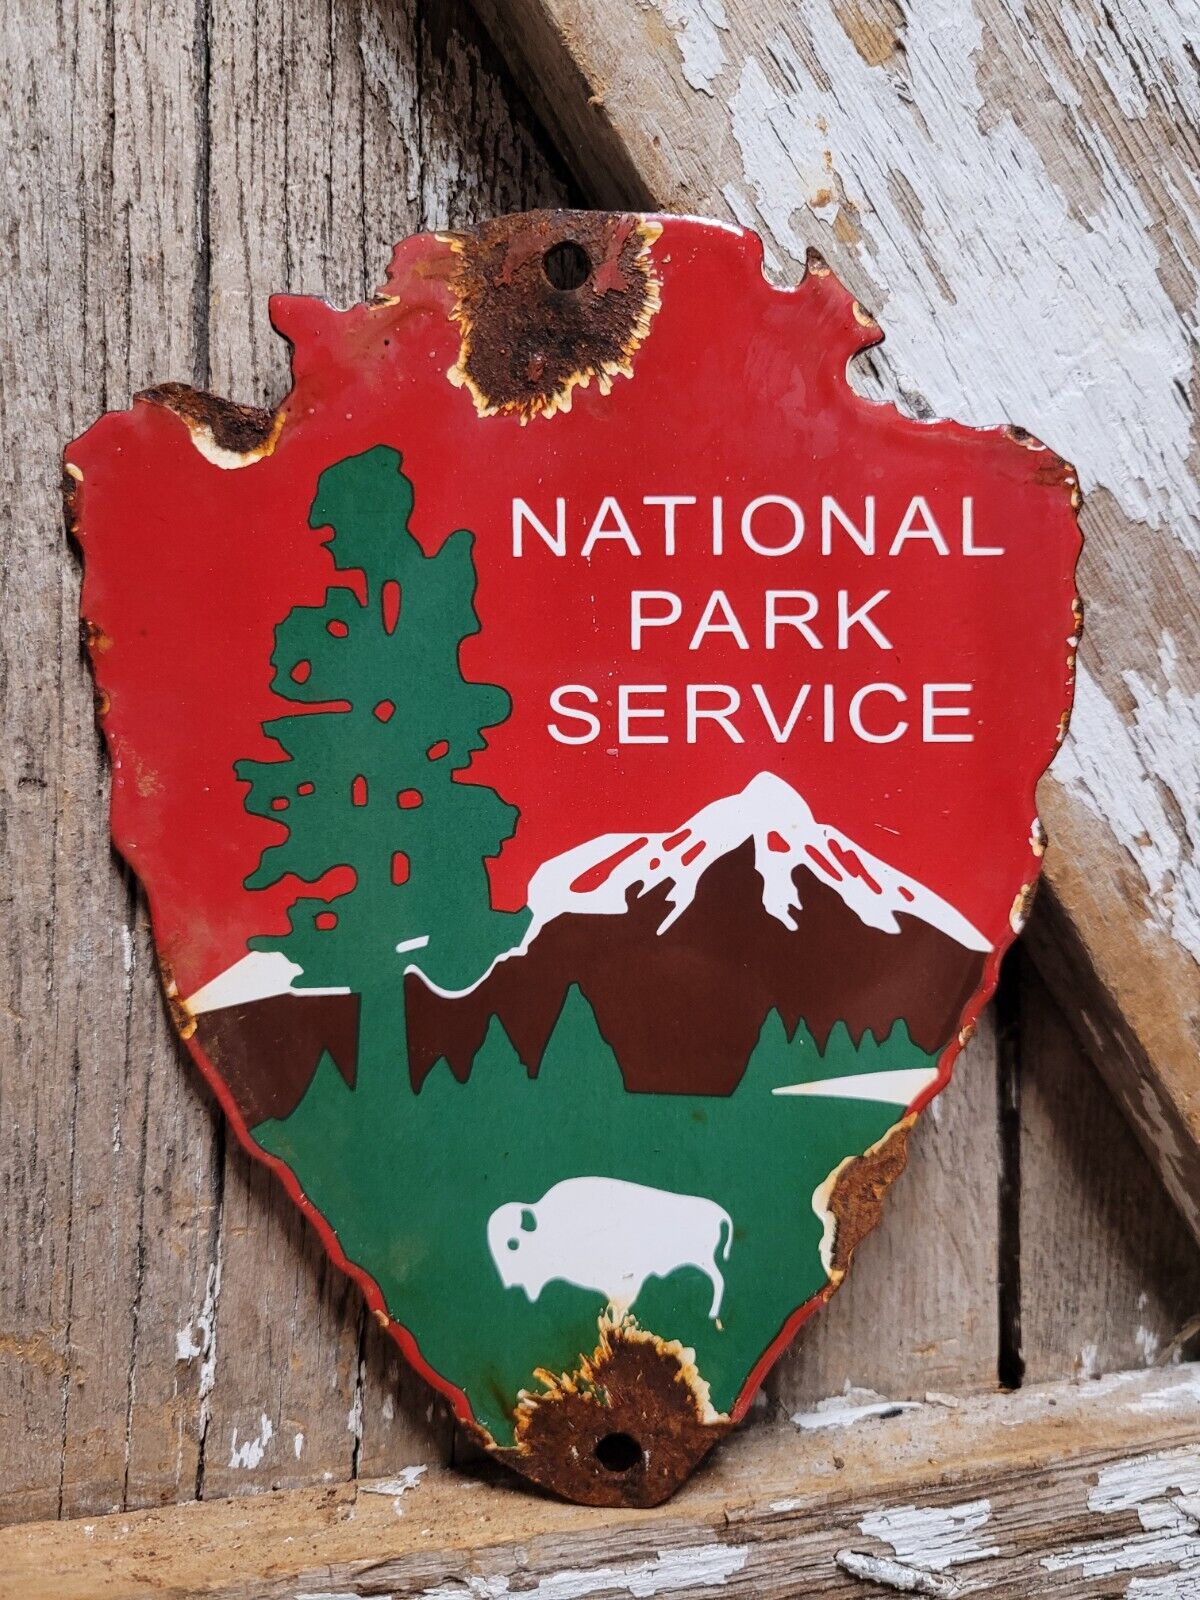 VINTAGE NATIONAL PARK SERVICE PORCELAIN SIGN FOREST RANGER STATION ARROWHEAD USA